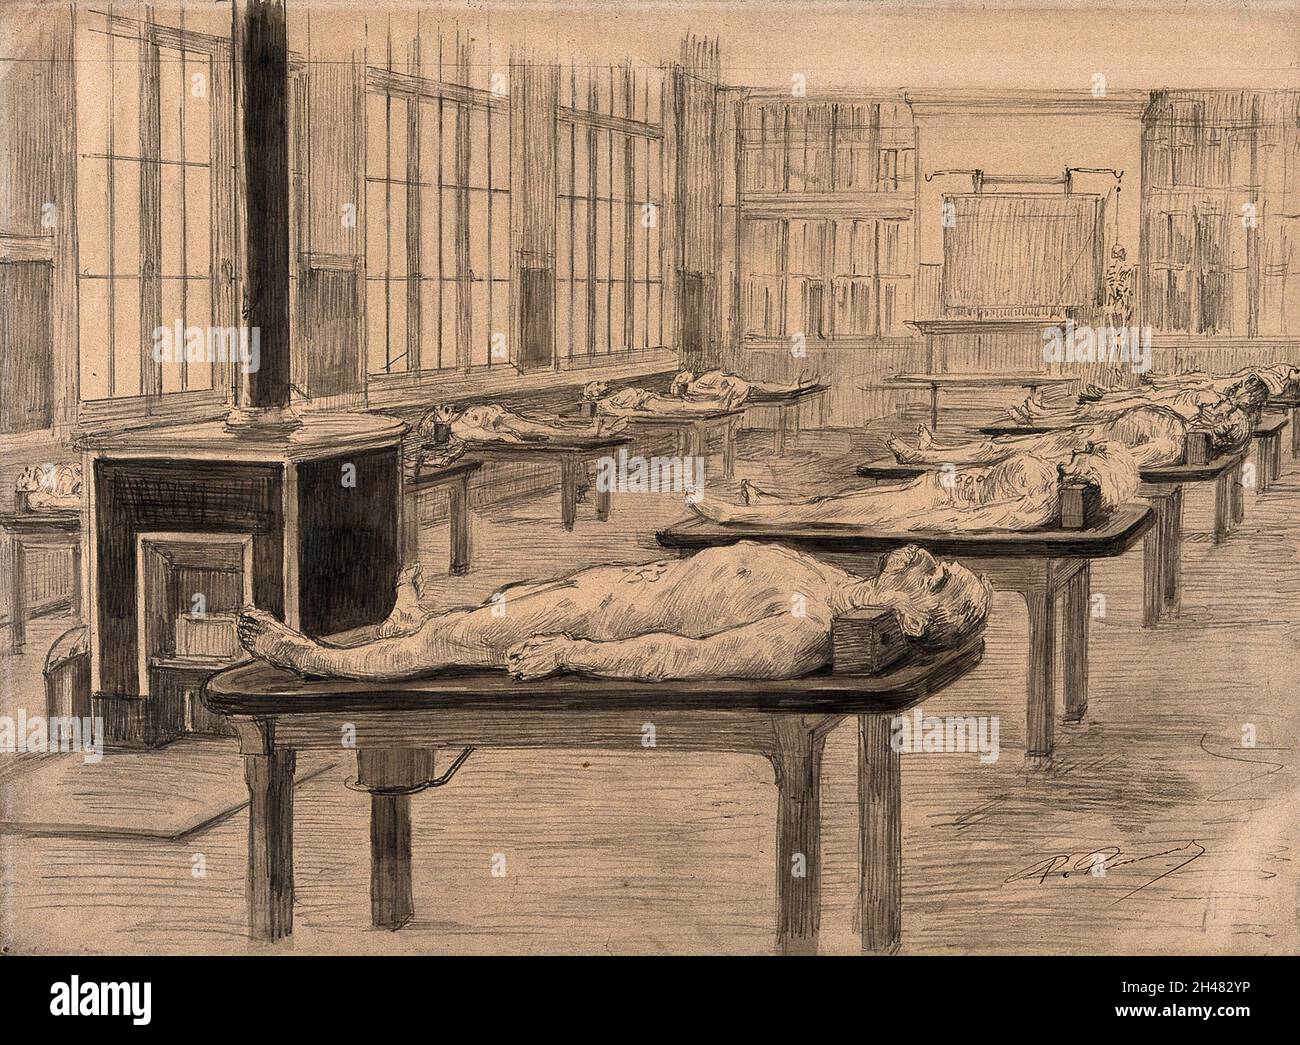 Interno di una sala di dissezione con cadaveri disposti su tavoli. Disegno di Paul Renouard, 1906. Foto Stock